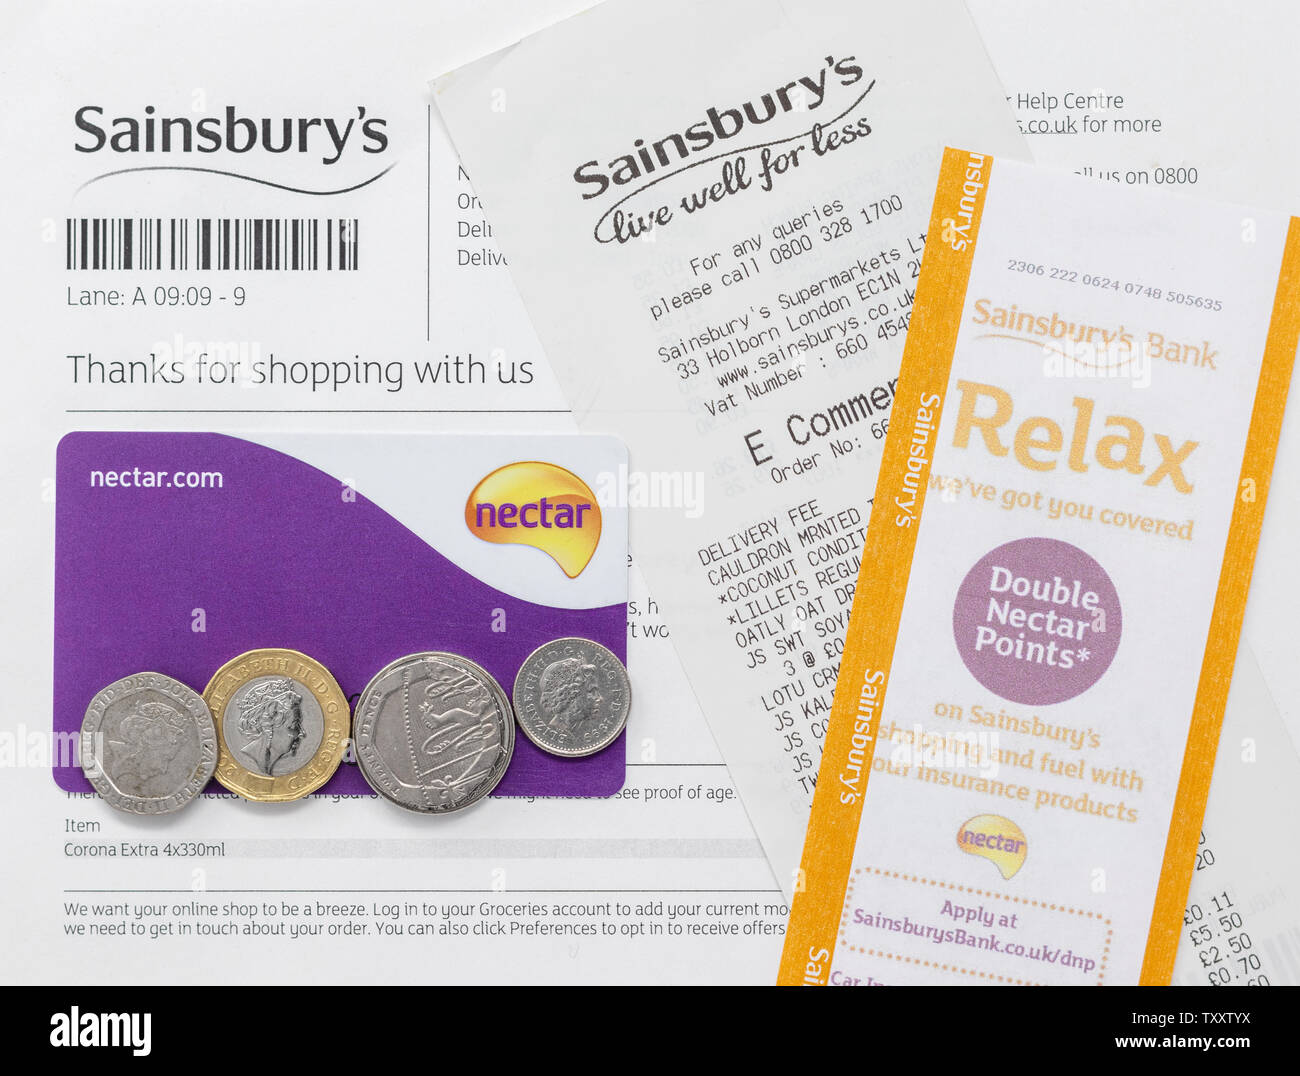 Sainsburys card immagini e fotografie stock ad alta risoluzione - Alamy